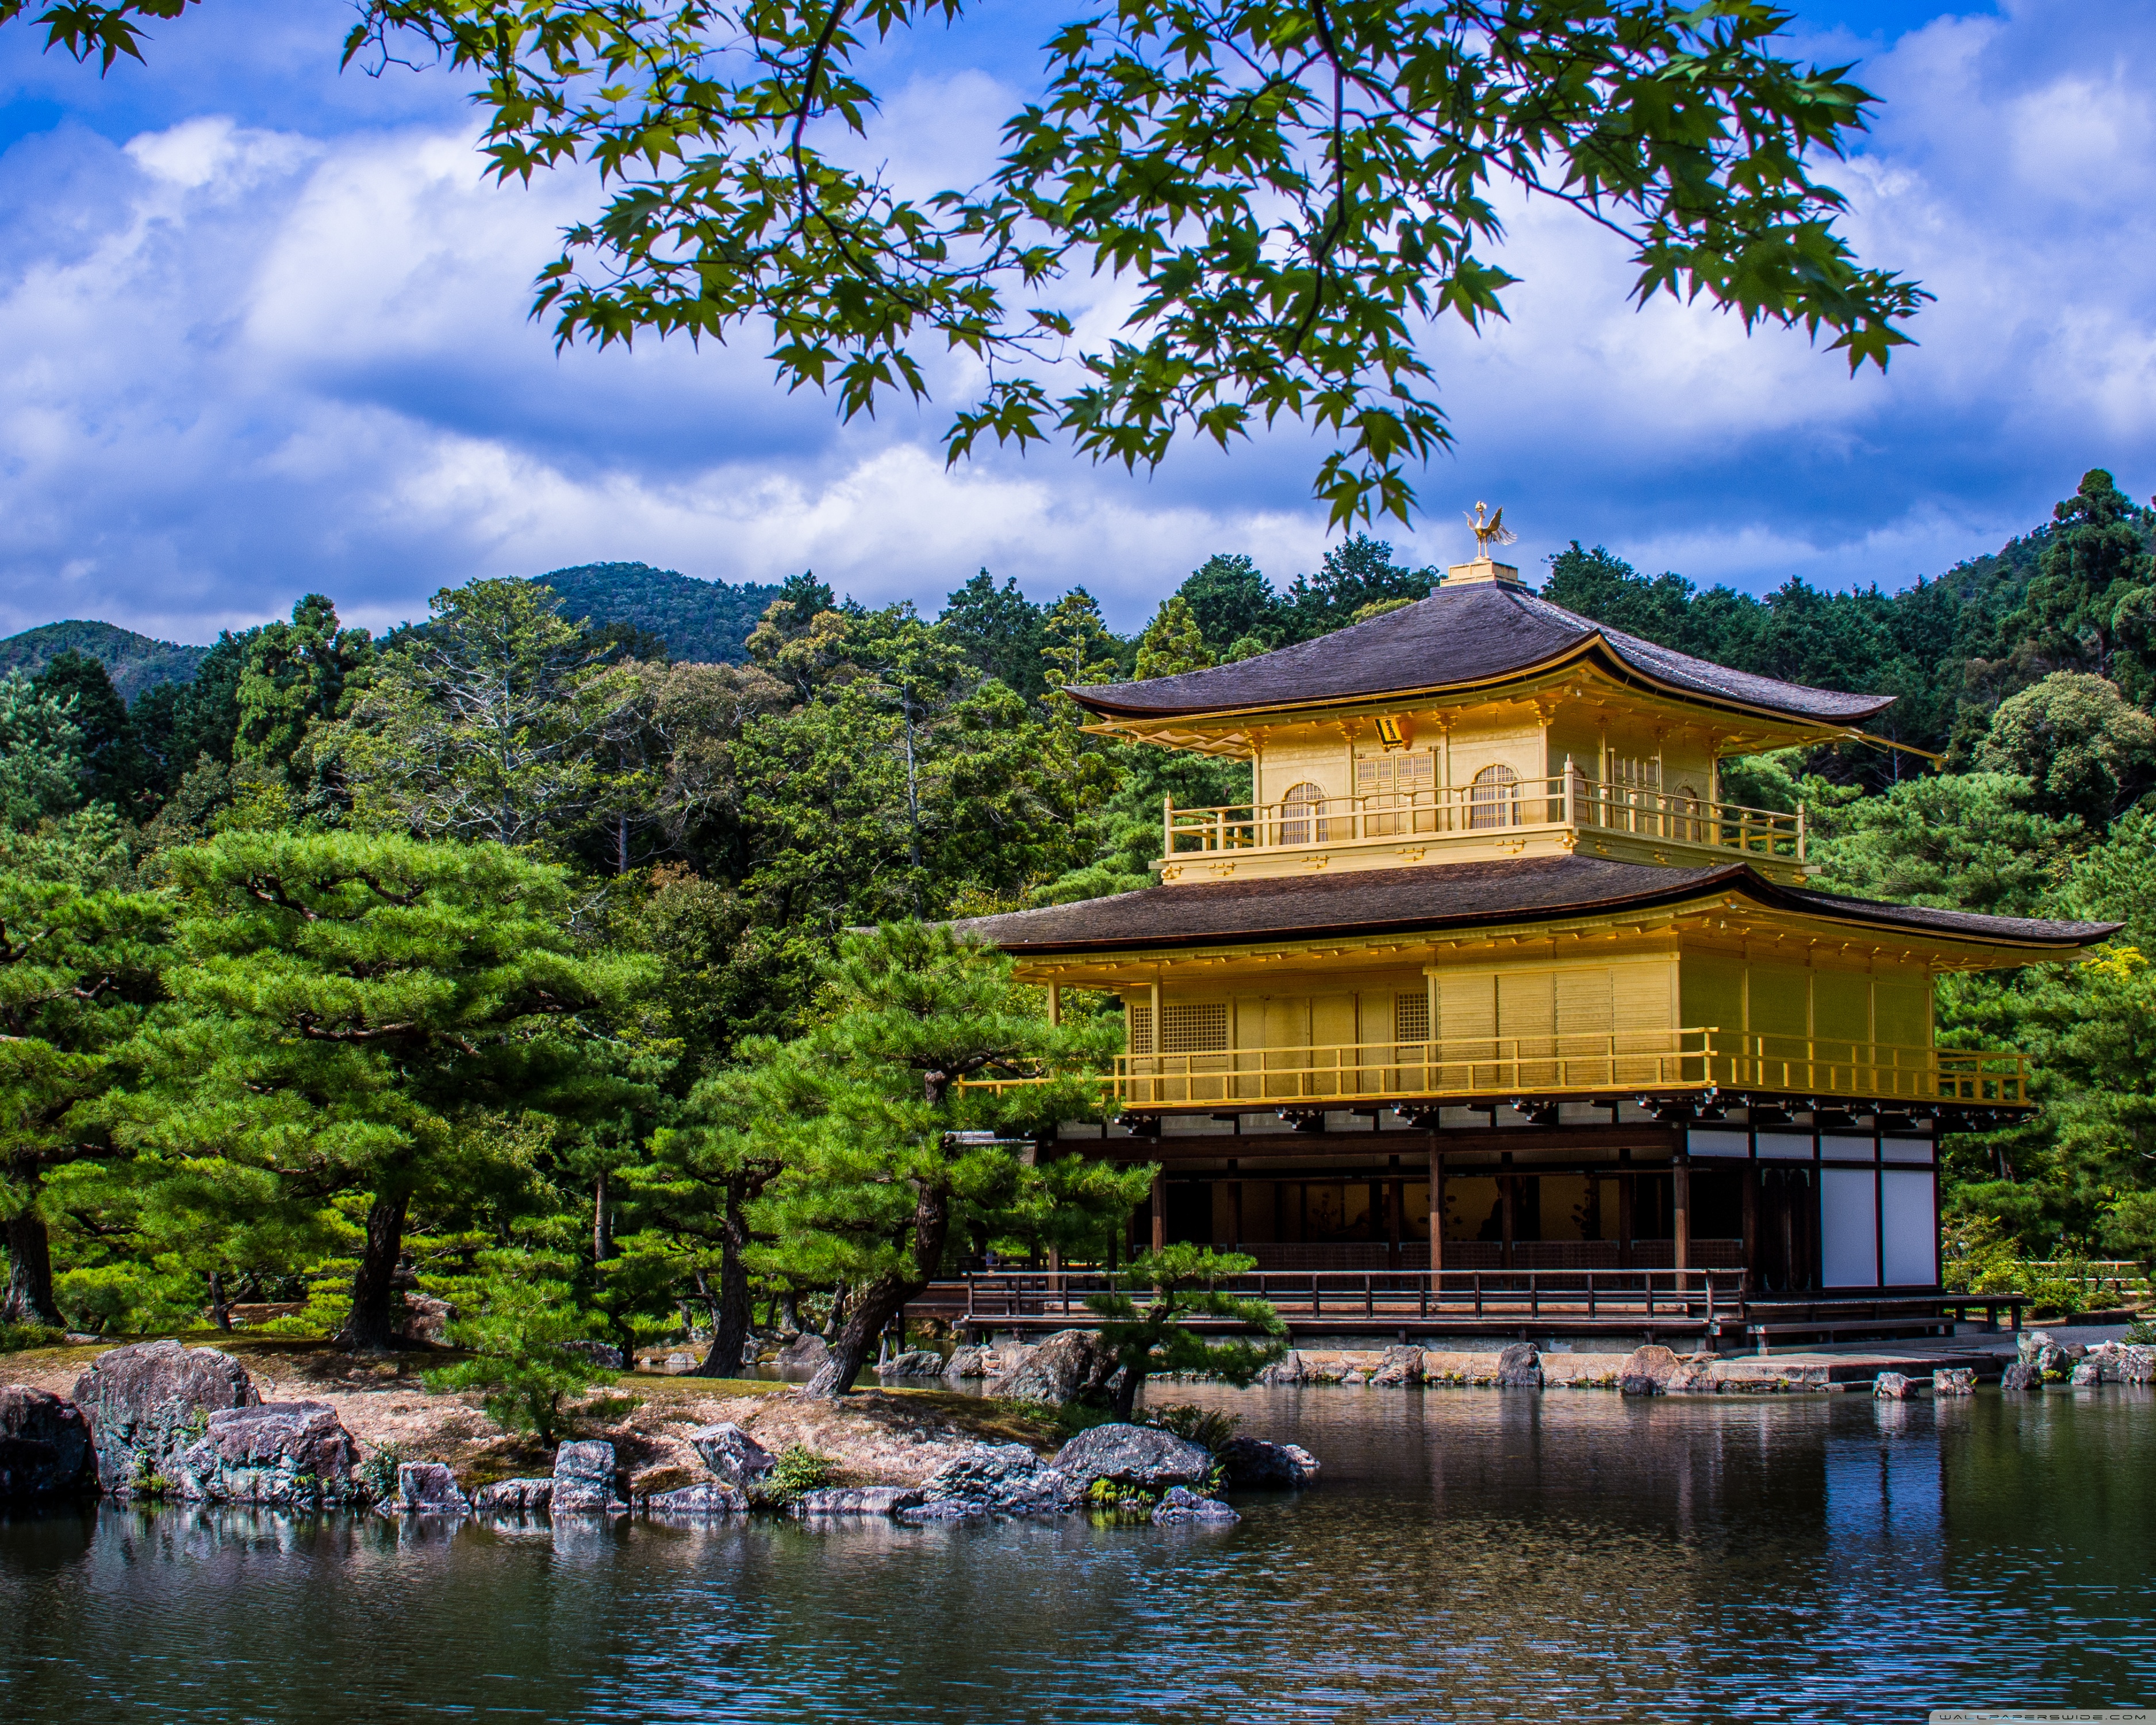 temple d'or fond d'écran hd 1366x768,la nature,paysage naturel,architecture chinoise,architecture,architecture japonaise